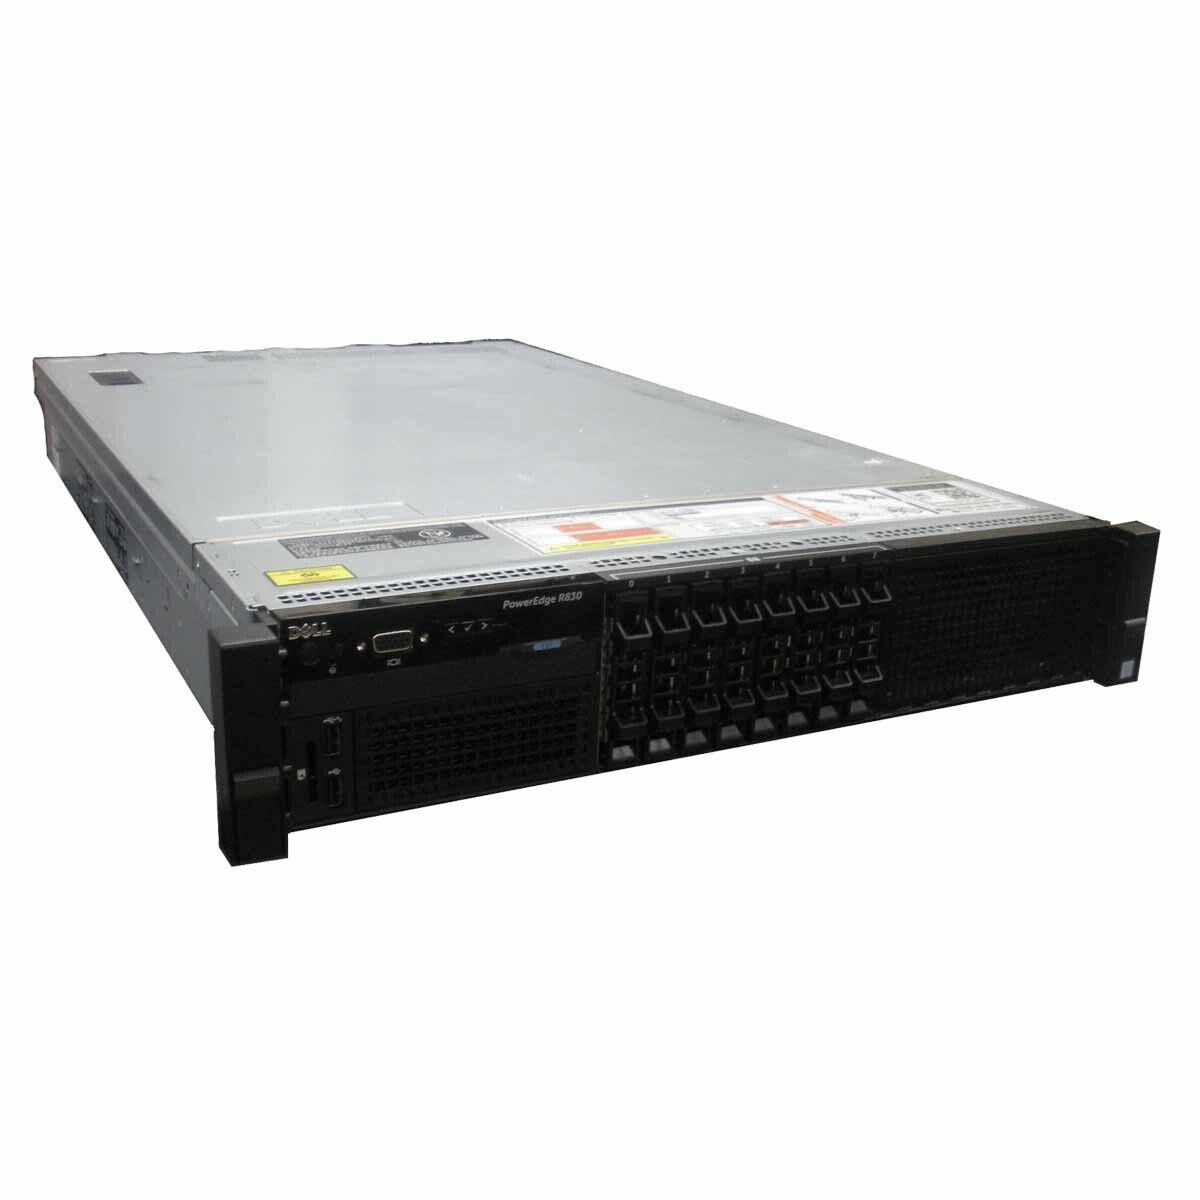 Dell PowerEdge R830 Server - Custom Build to Order